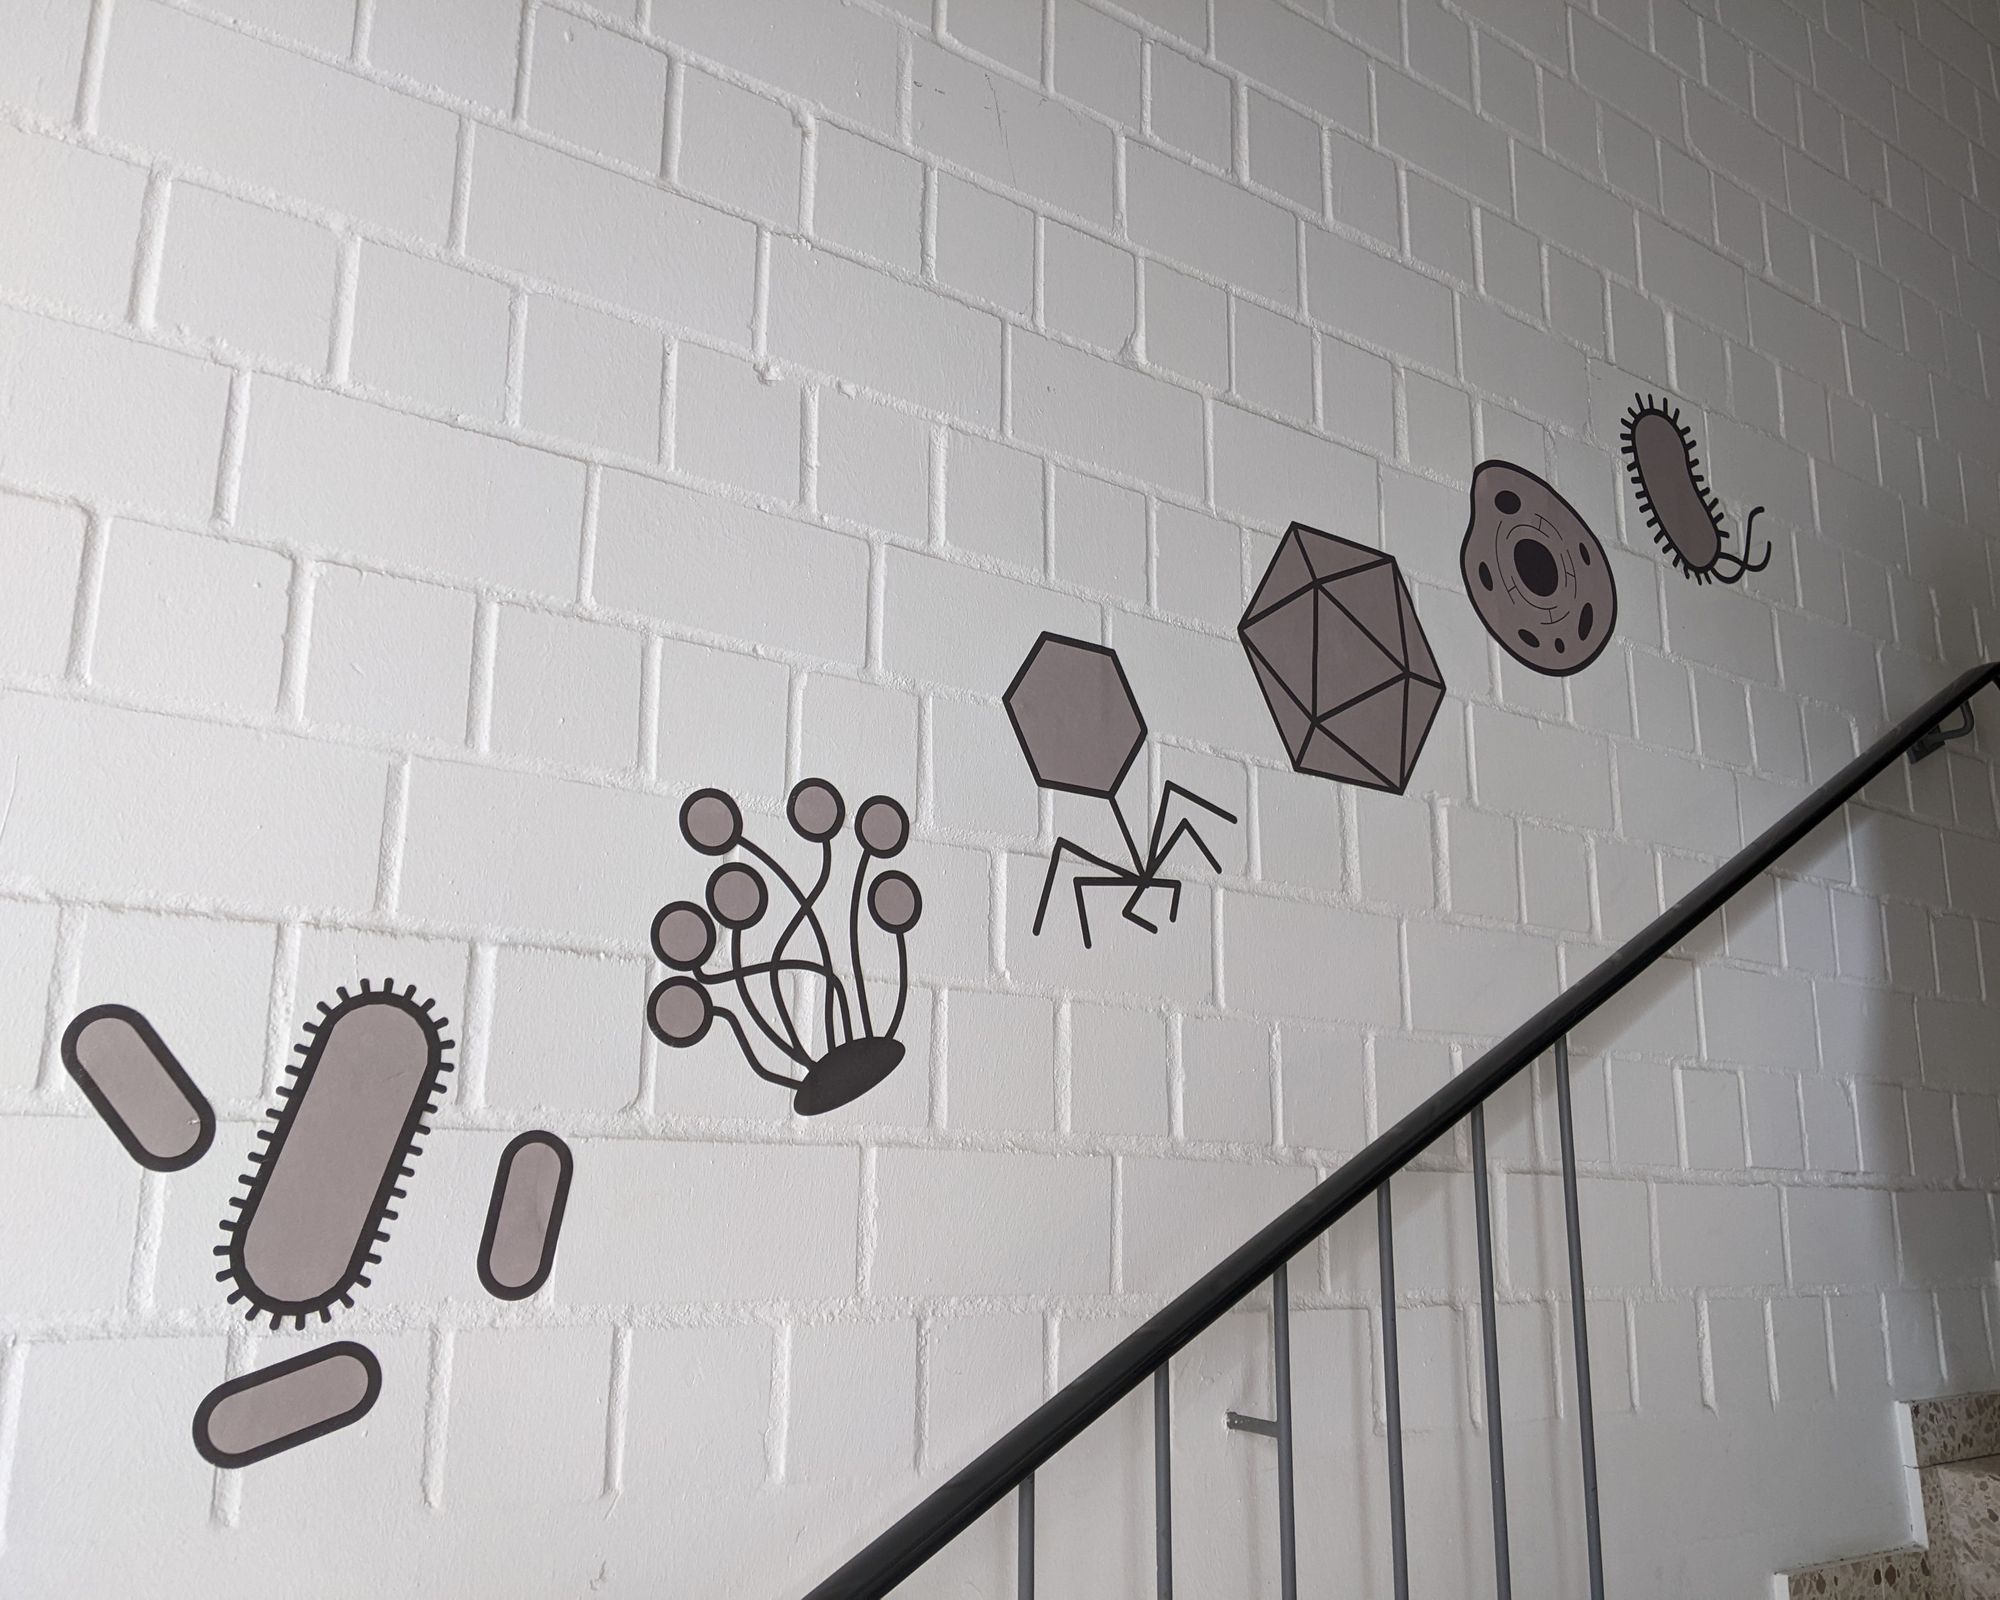 An einer weiß gestrichenen Ziegelwand sind über einem Treppengeländer stilisierte Abbildungen verschiedener Mikroorganismen angebracht. Die dritte Abbildung von links zeigt einen sechseckigen „Kopf“ mit einer Art Stiel, von dem sechs abgewinkelte „Beine“ abgehen.